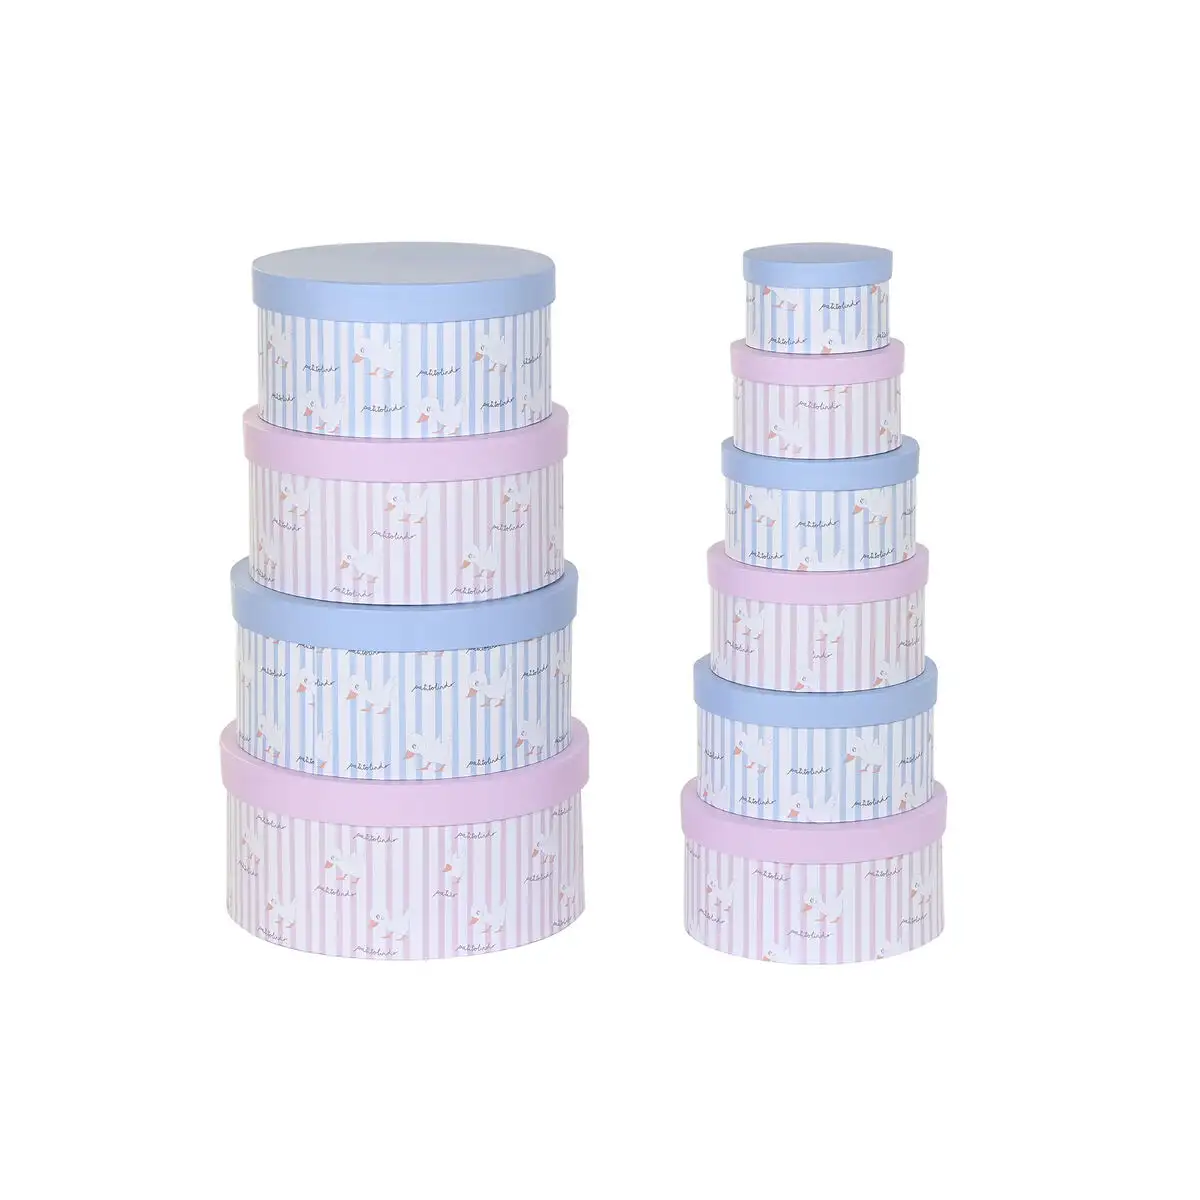 Jeu de caisses de rangement empilables dkd home decor bleu rose carton 37 5 x 37 5 x 18 cm _6379. DIAYTAR SENEGAL - Où Choisir est une Célébration de l'Artisanat Local. Découvrez notre boutique en ligne et choisissez des produits qui incarnent la passion des artisans sénégalais.